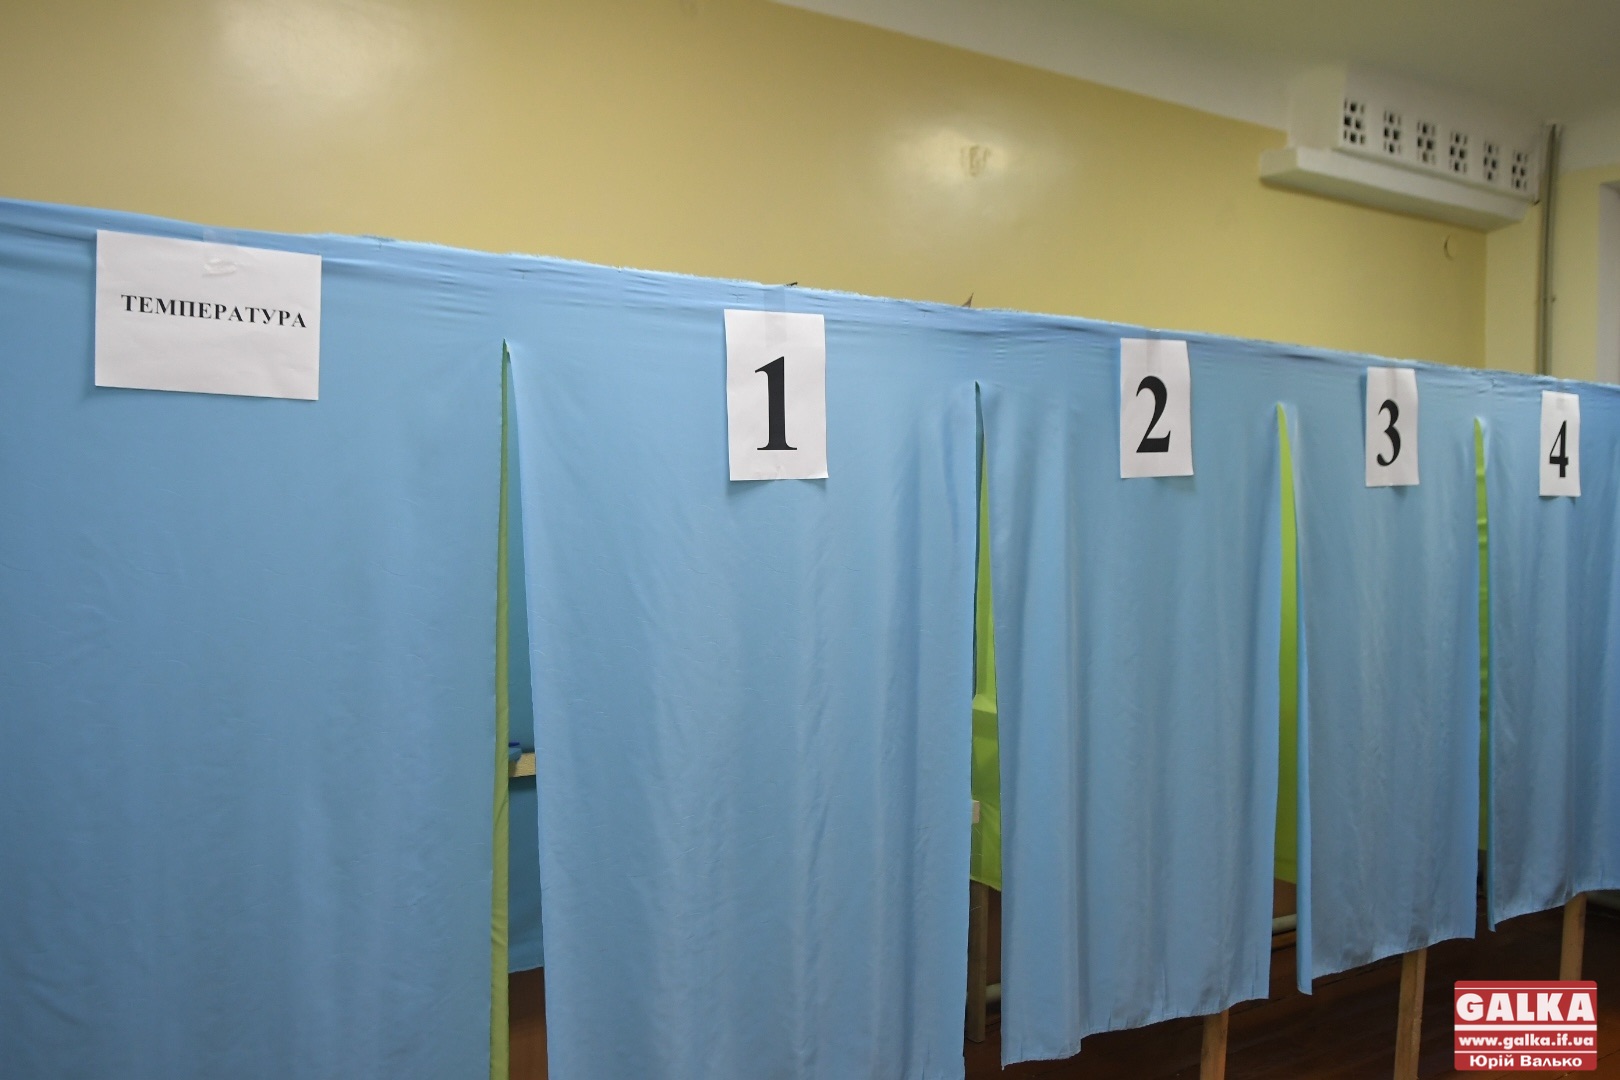 Результати по 87 округу треба скасувати і провести нові вибори, – депутат від ЄС Вадим Войтик